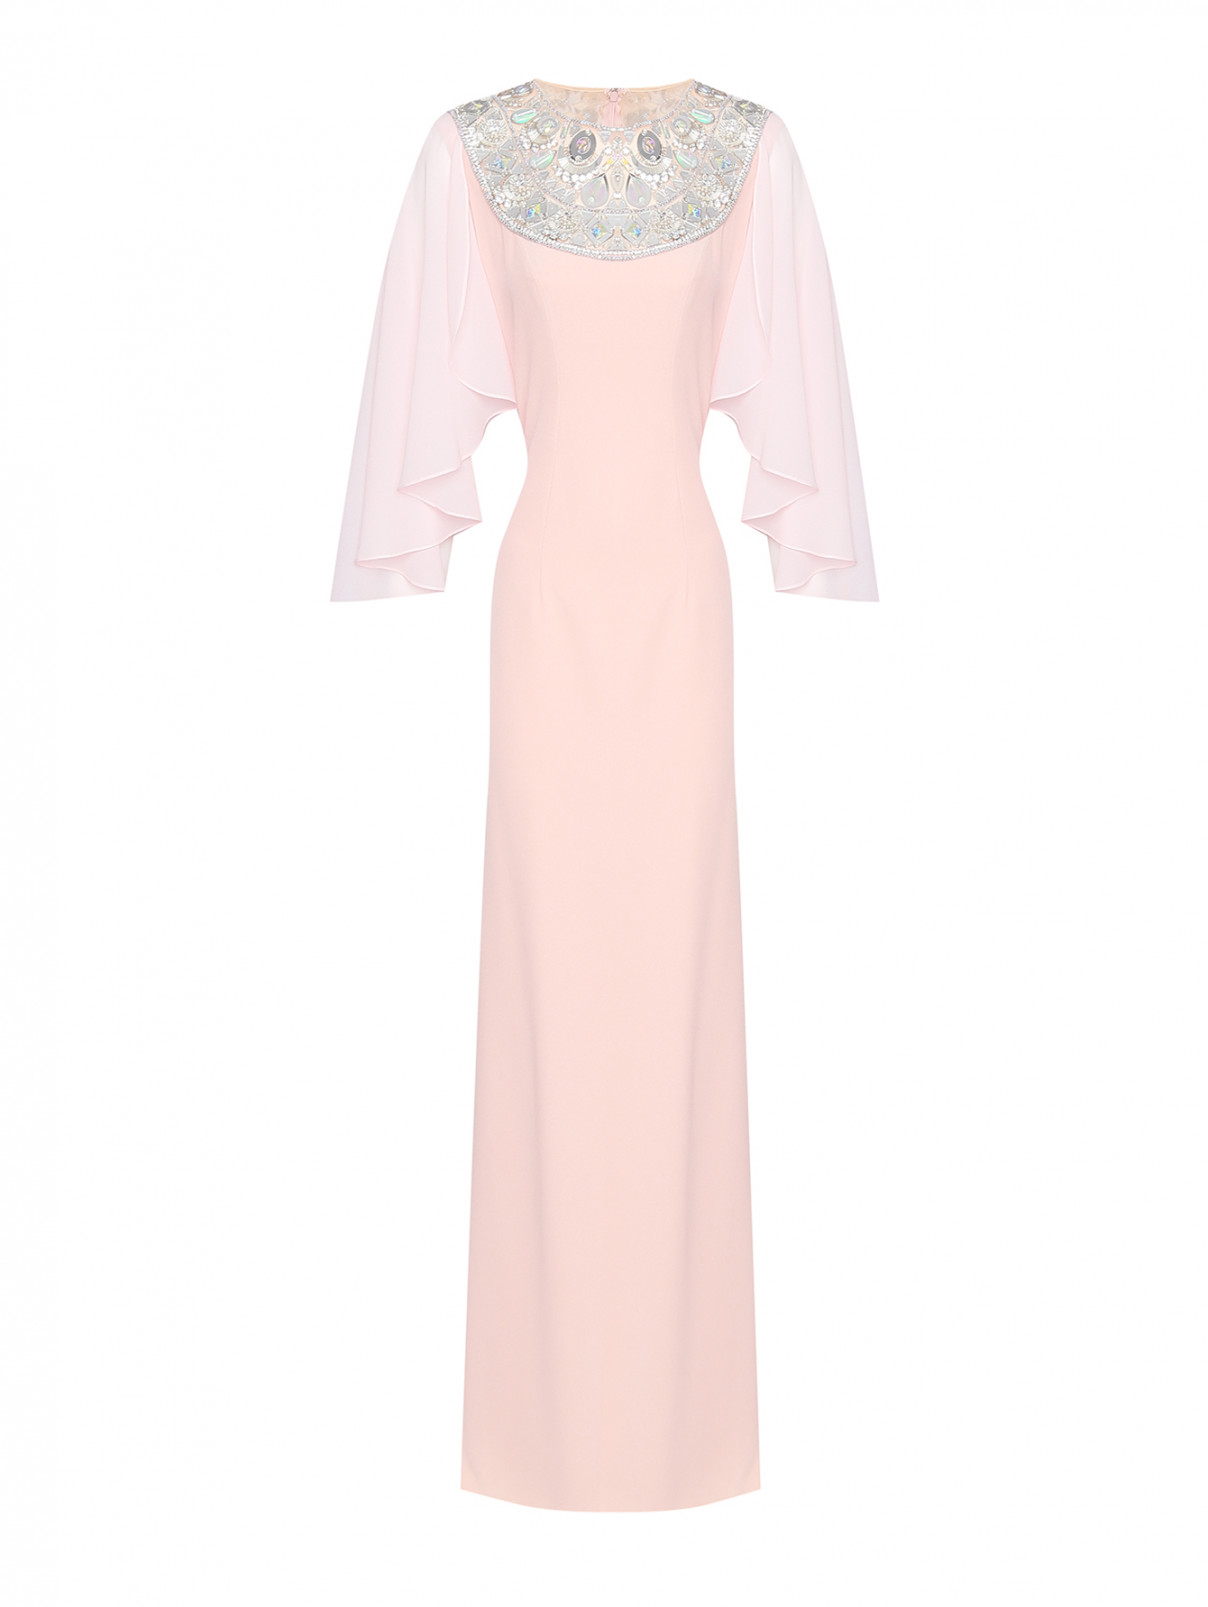 Платье, декорированное кристаллами Jenny Packham  –  Общий вид  – Цвет:  Розовый